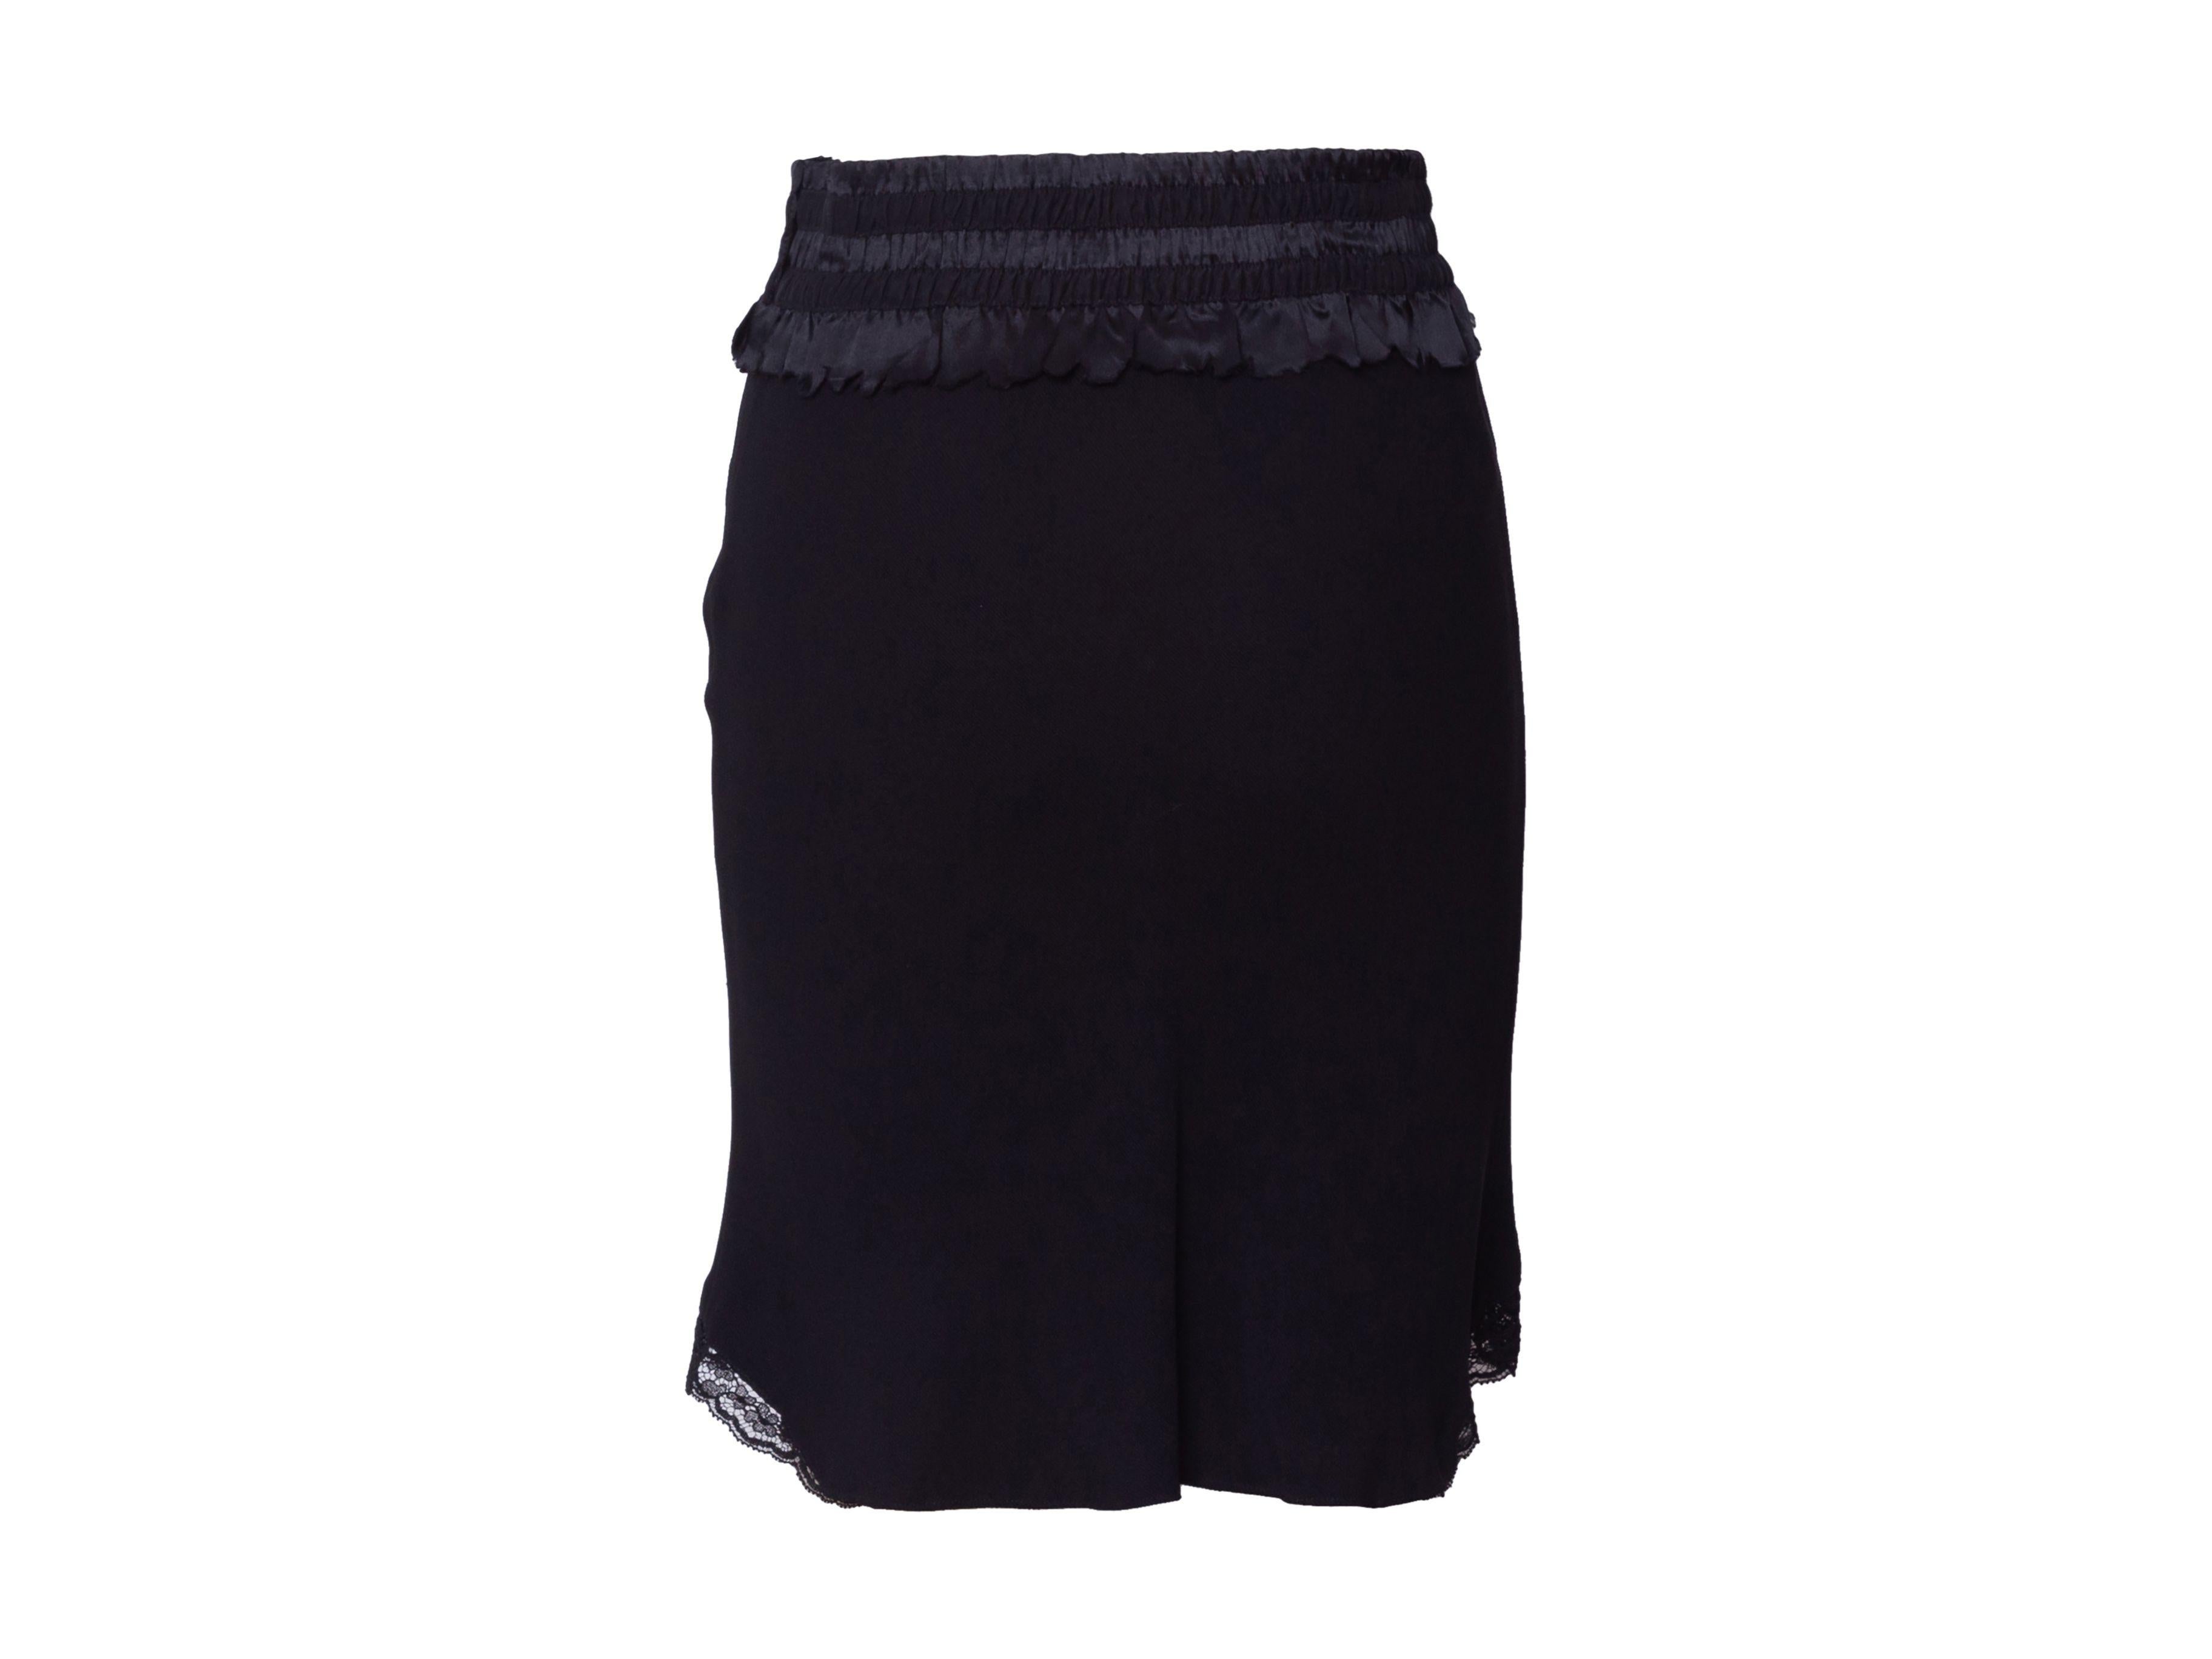 Women's Christian Dior Vintage Black Black Lace-Trimmed Skirt